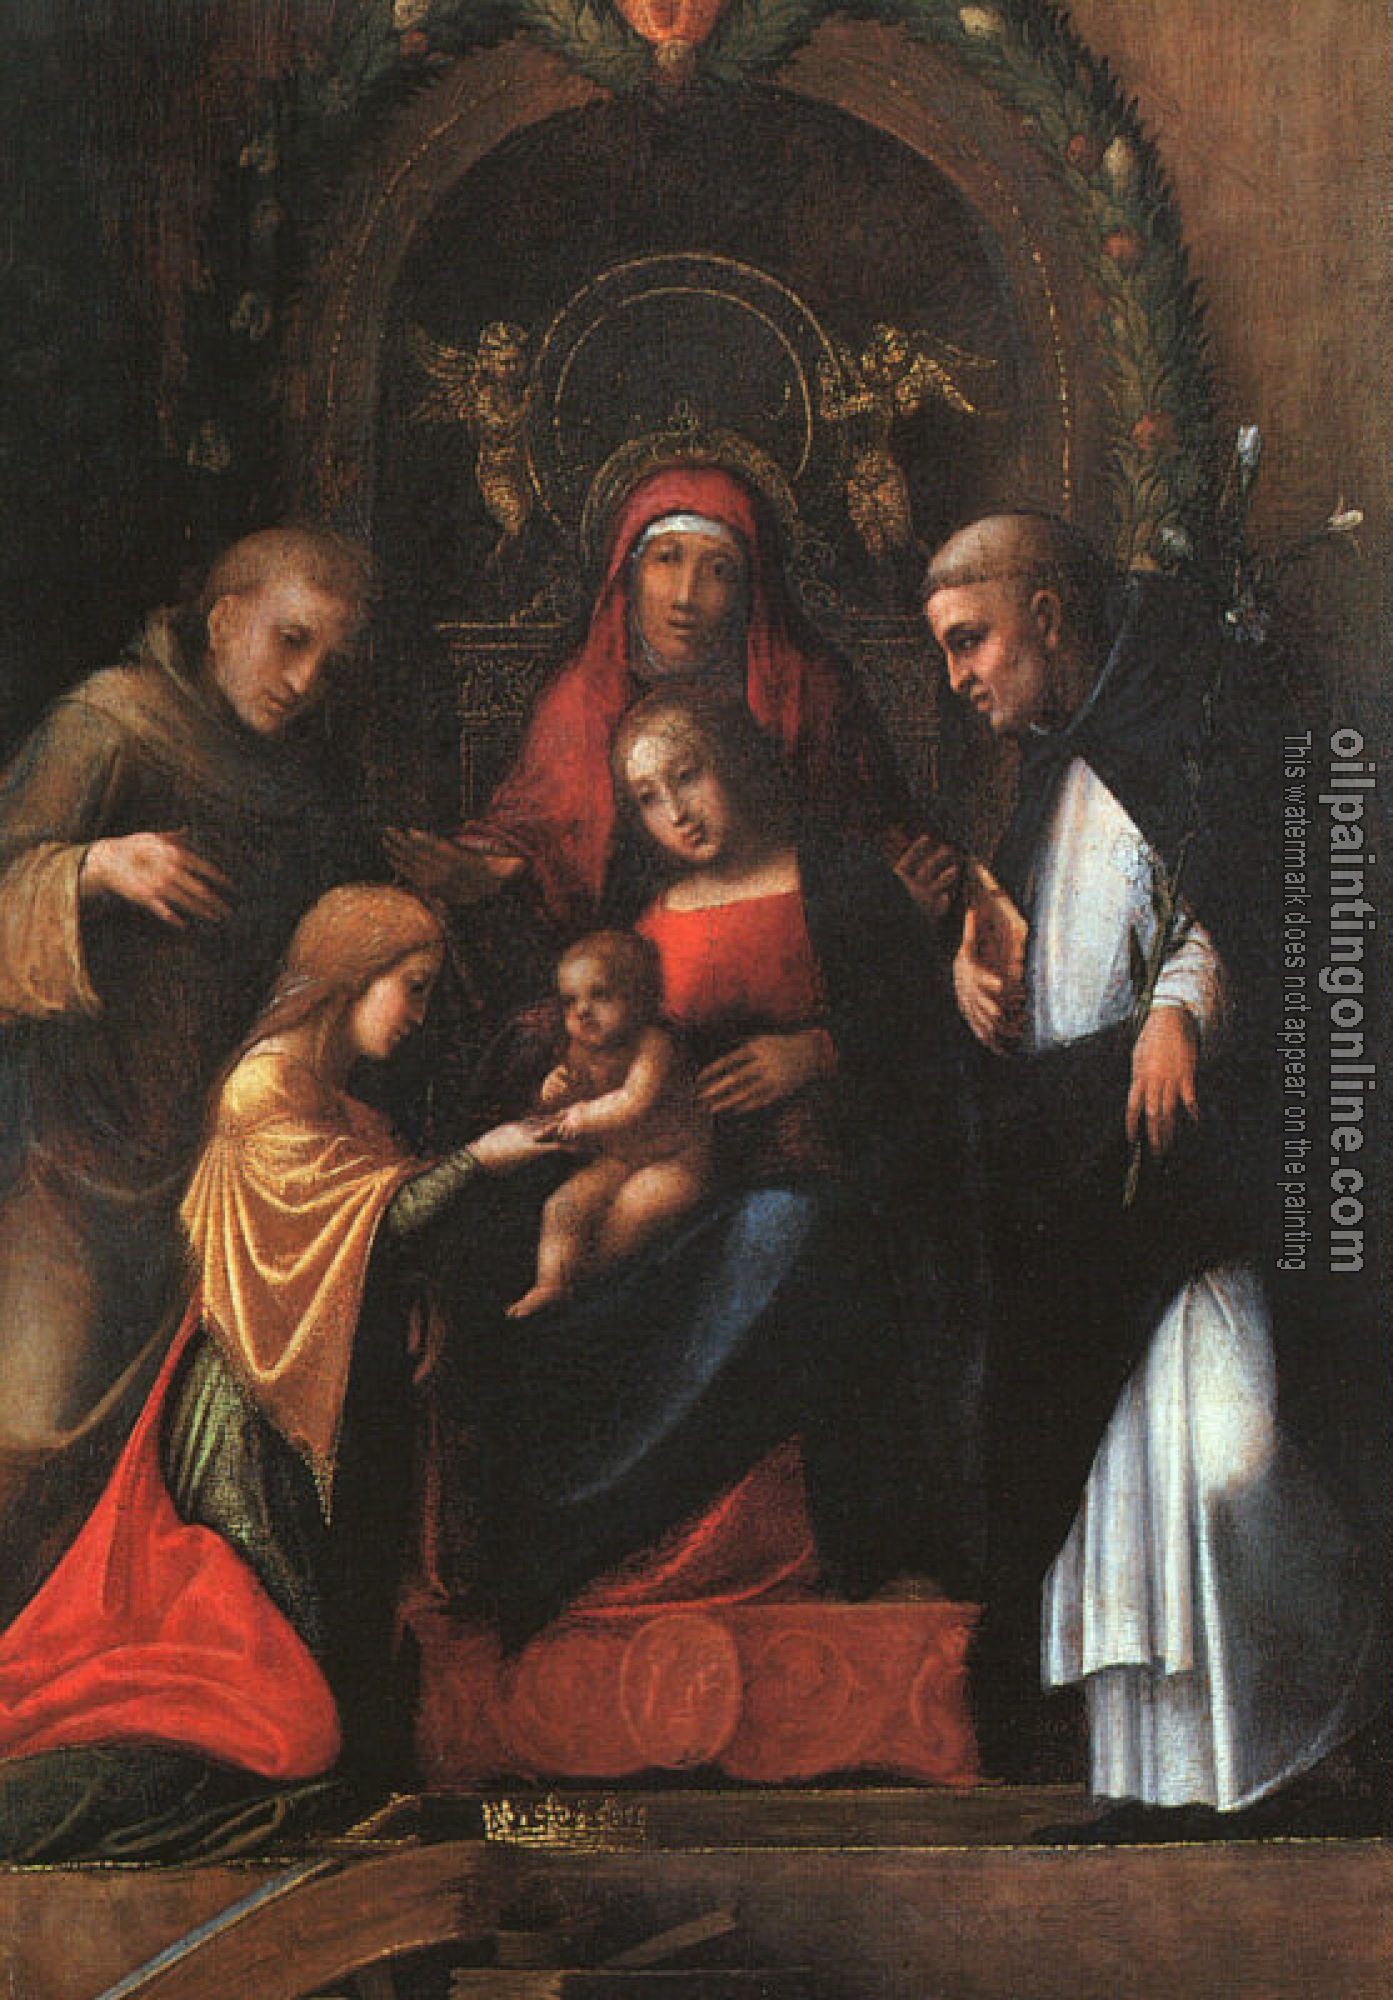 Correggio - The Mystic Marriage of St. Catherine